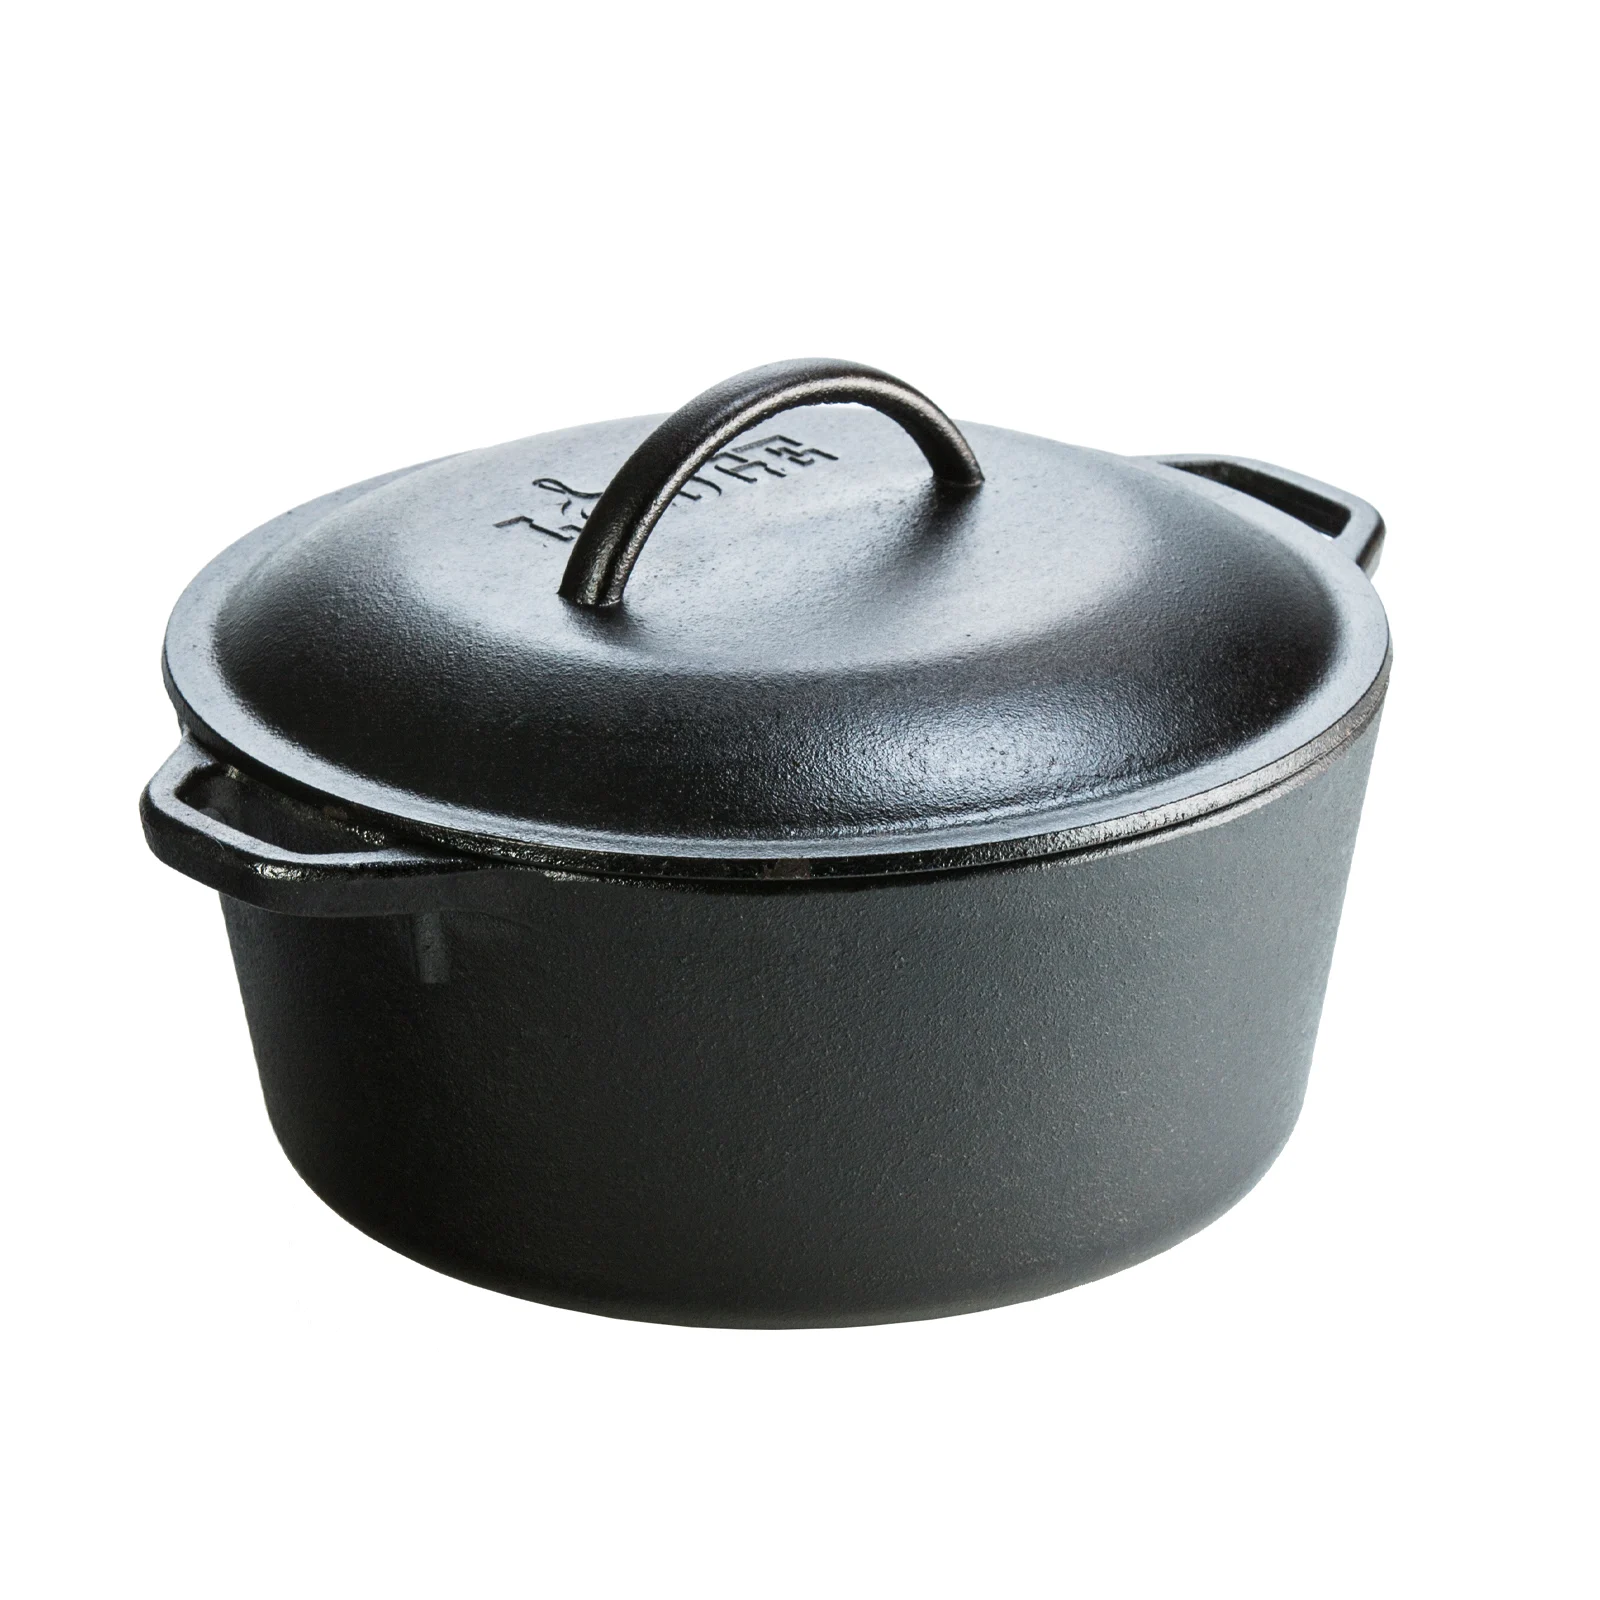 A cast iron pot